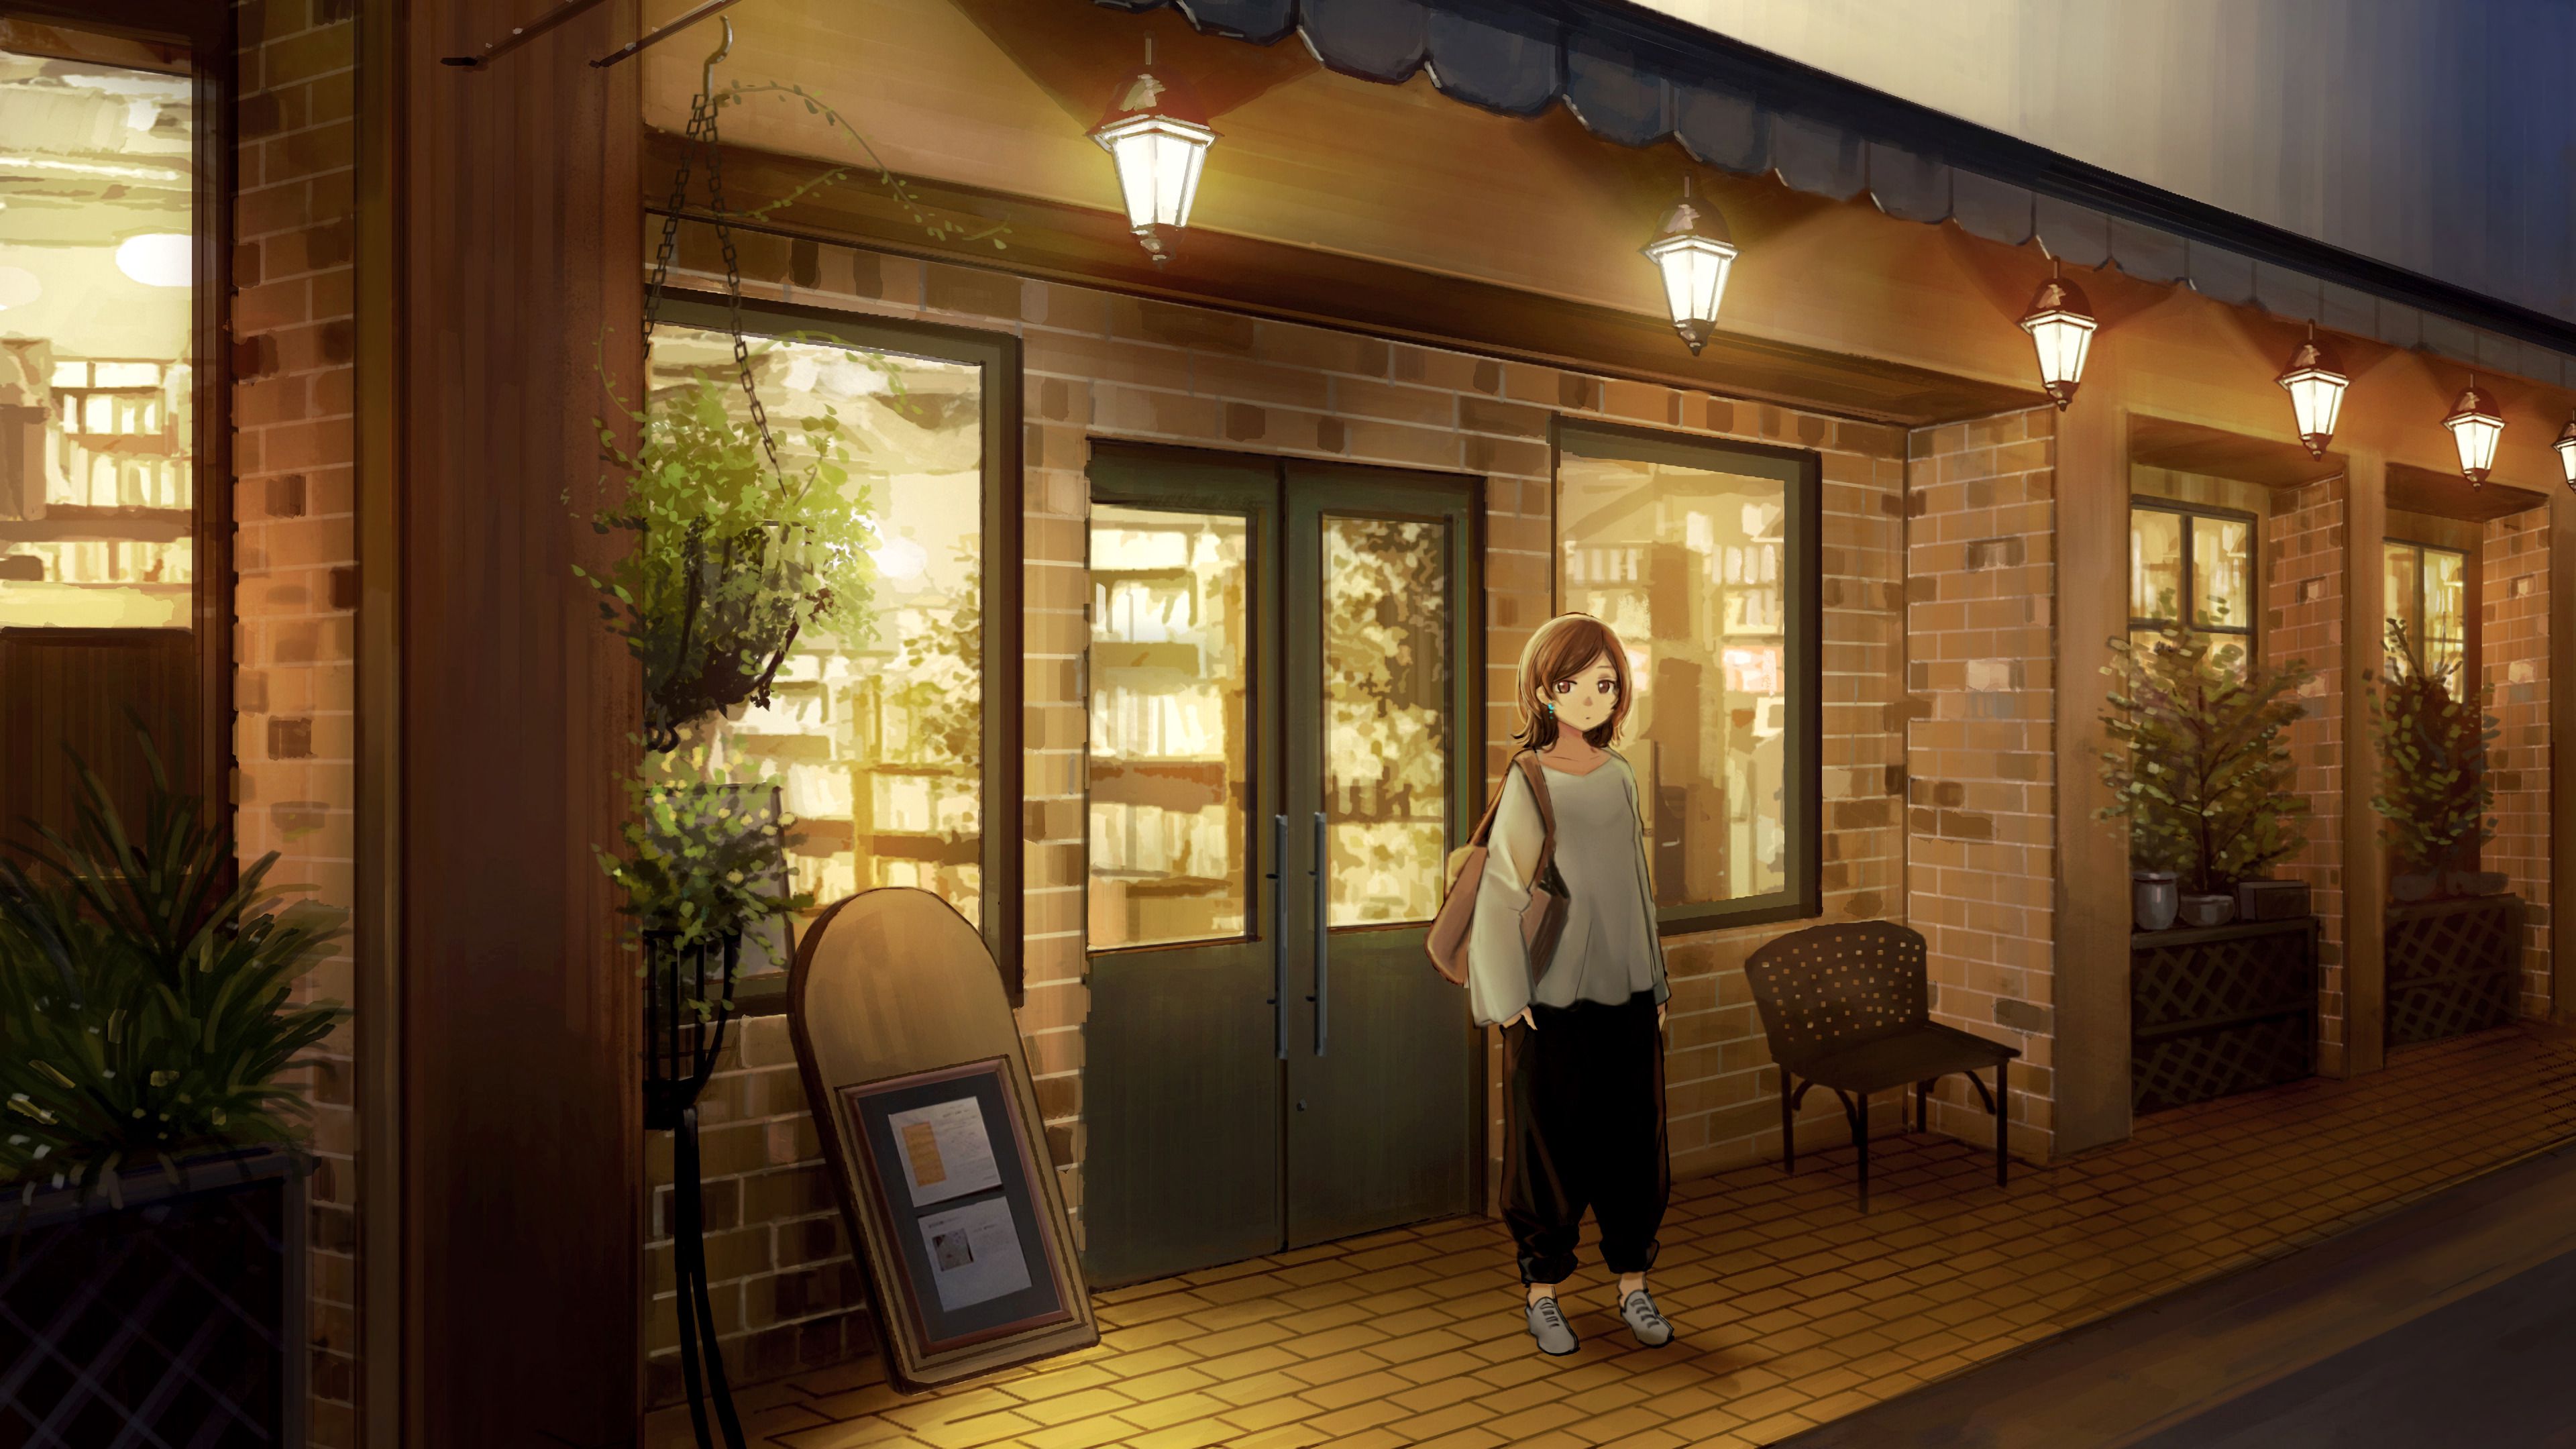 Hình ảnh tuyệt đẹp của quán cafe này sẽ khiến bạn ngất ngây với thiết kế tinh tế và độc đáo. Wallpaper quán cafe mang đến cho bạn cảm giác tràn đầy sức sống, đong đầy niềm đam mê và yêu thích anime. Hãy tải ngay hình nền này và cùng hòa mình vào thế giới anime tuyệt vời của bạn.